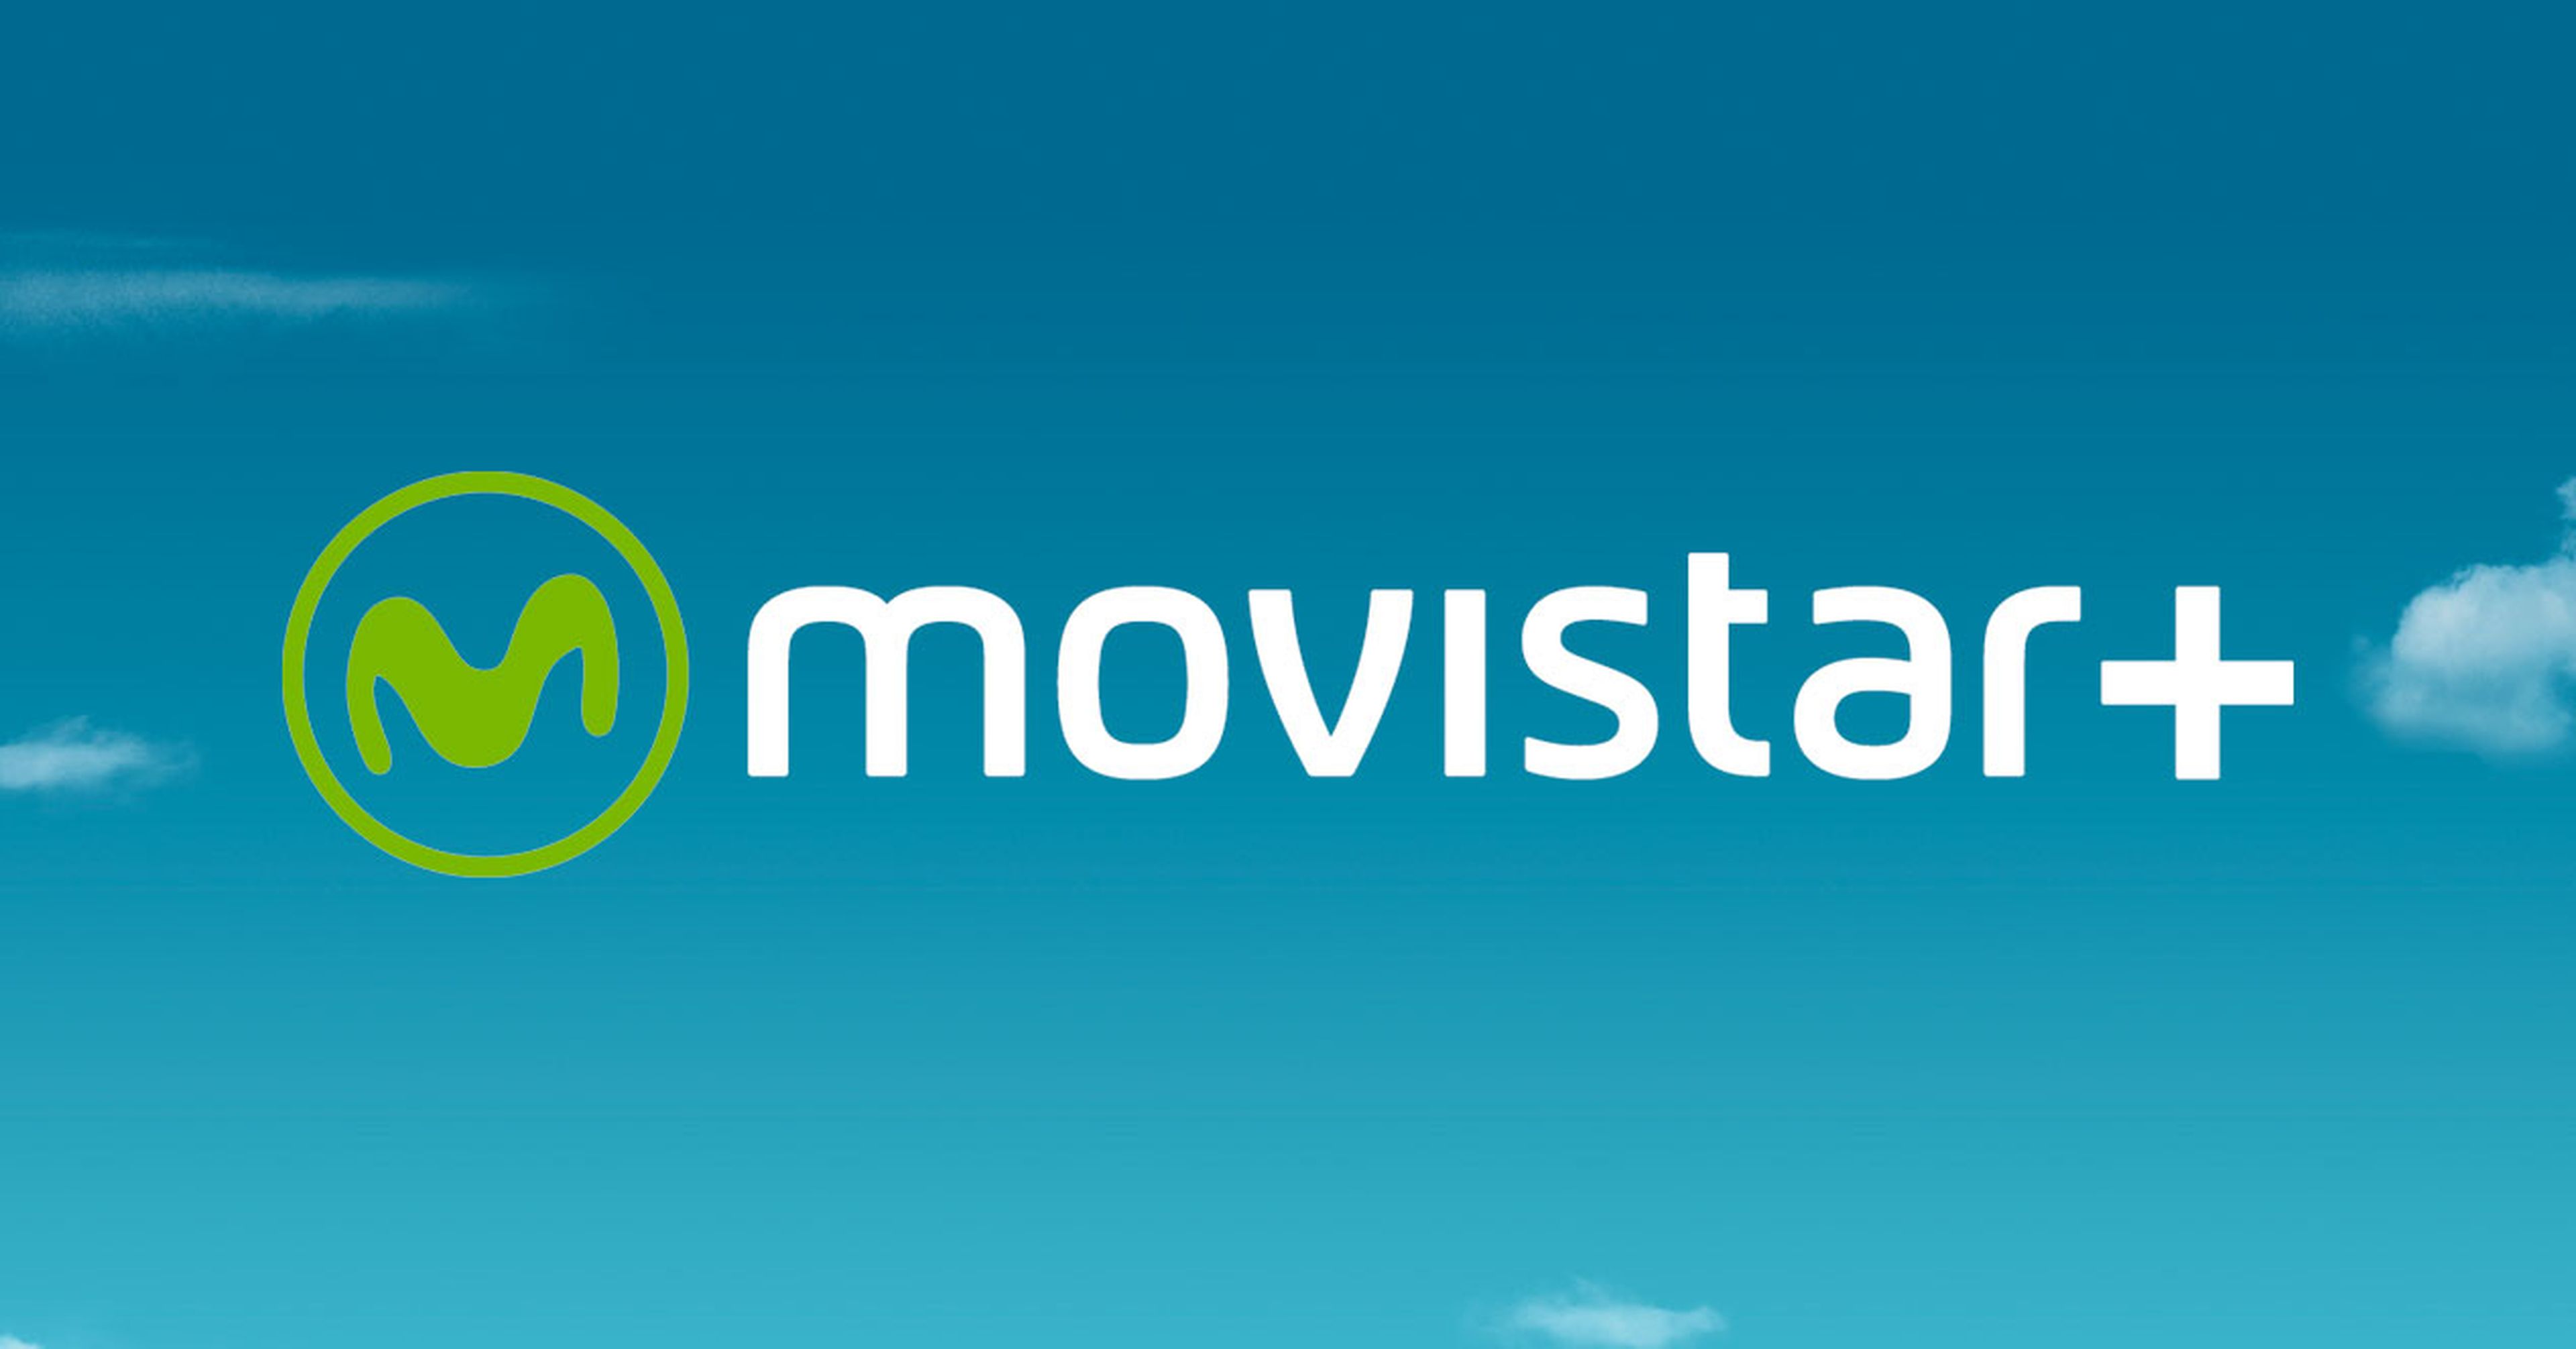 Movistar+ se lanza a la producción propia con La peste de Alberto Rodríguez (La isla mínima)